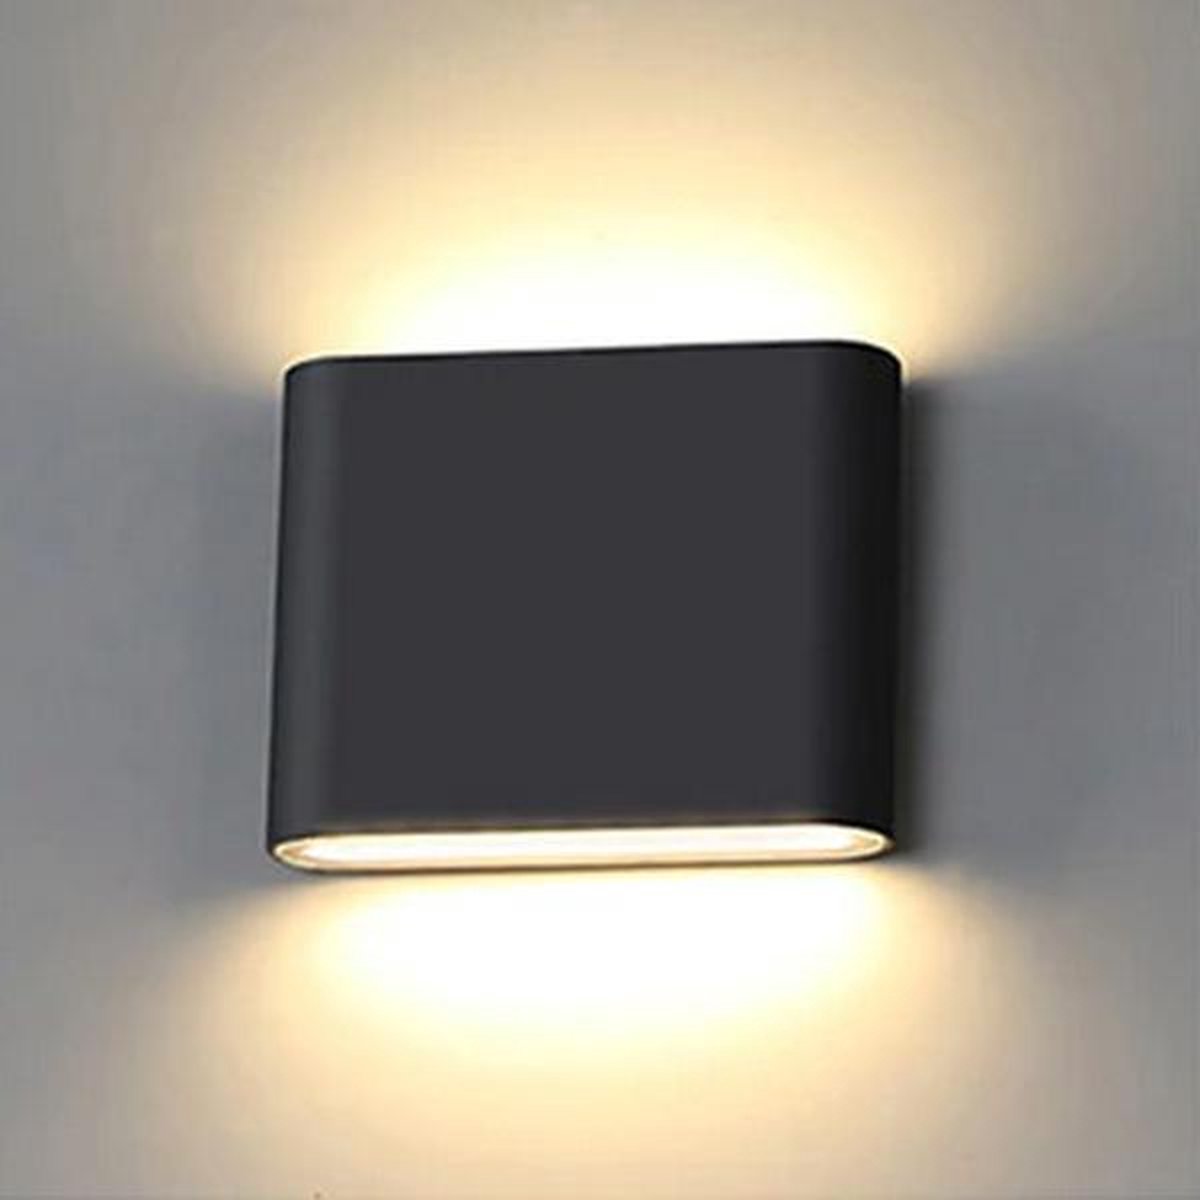 Vtw Living - LED Wandlamp - Set van 2 - Buitenverlichting - 6 Watt